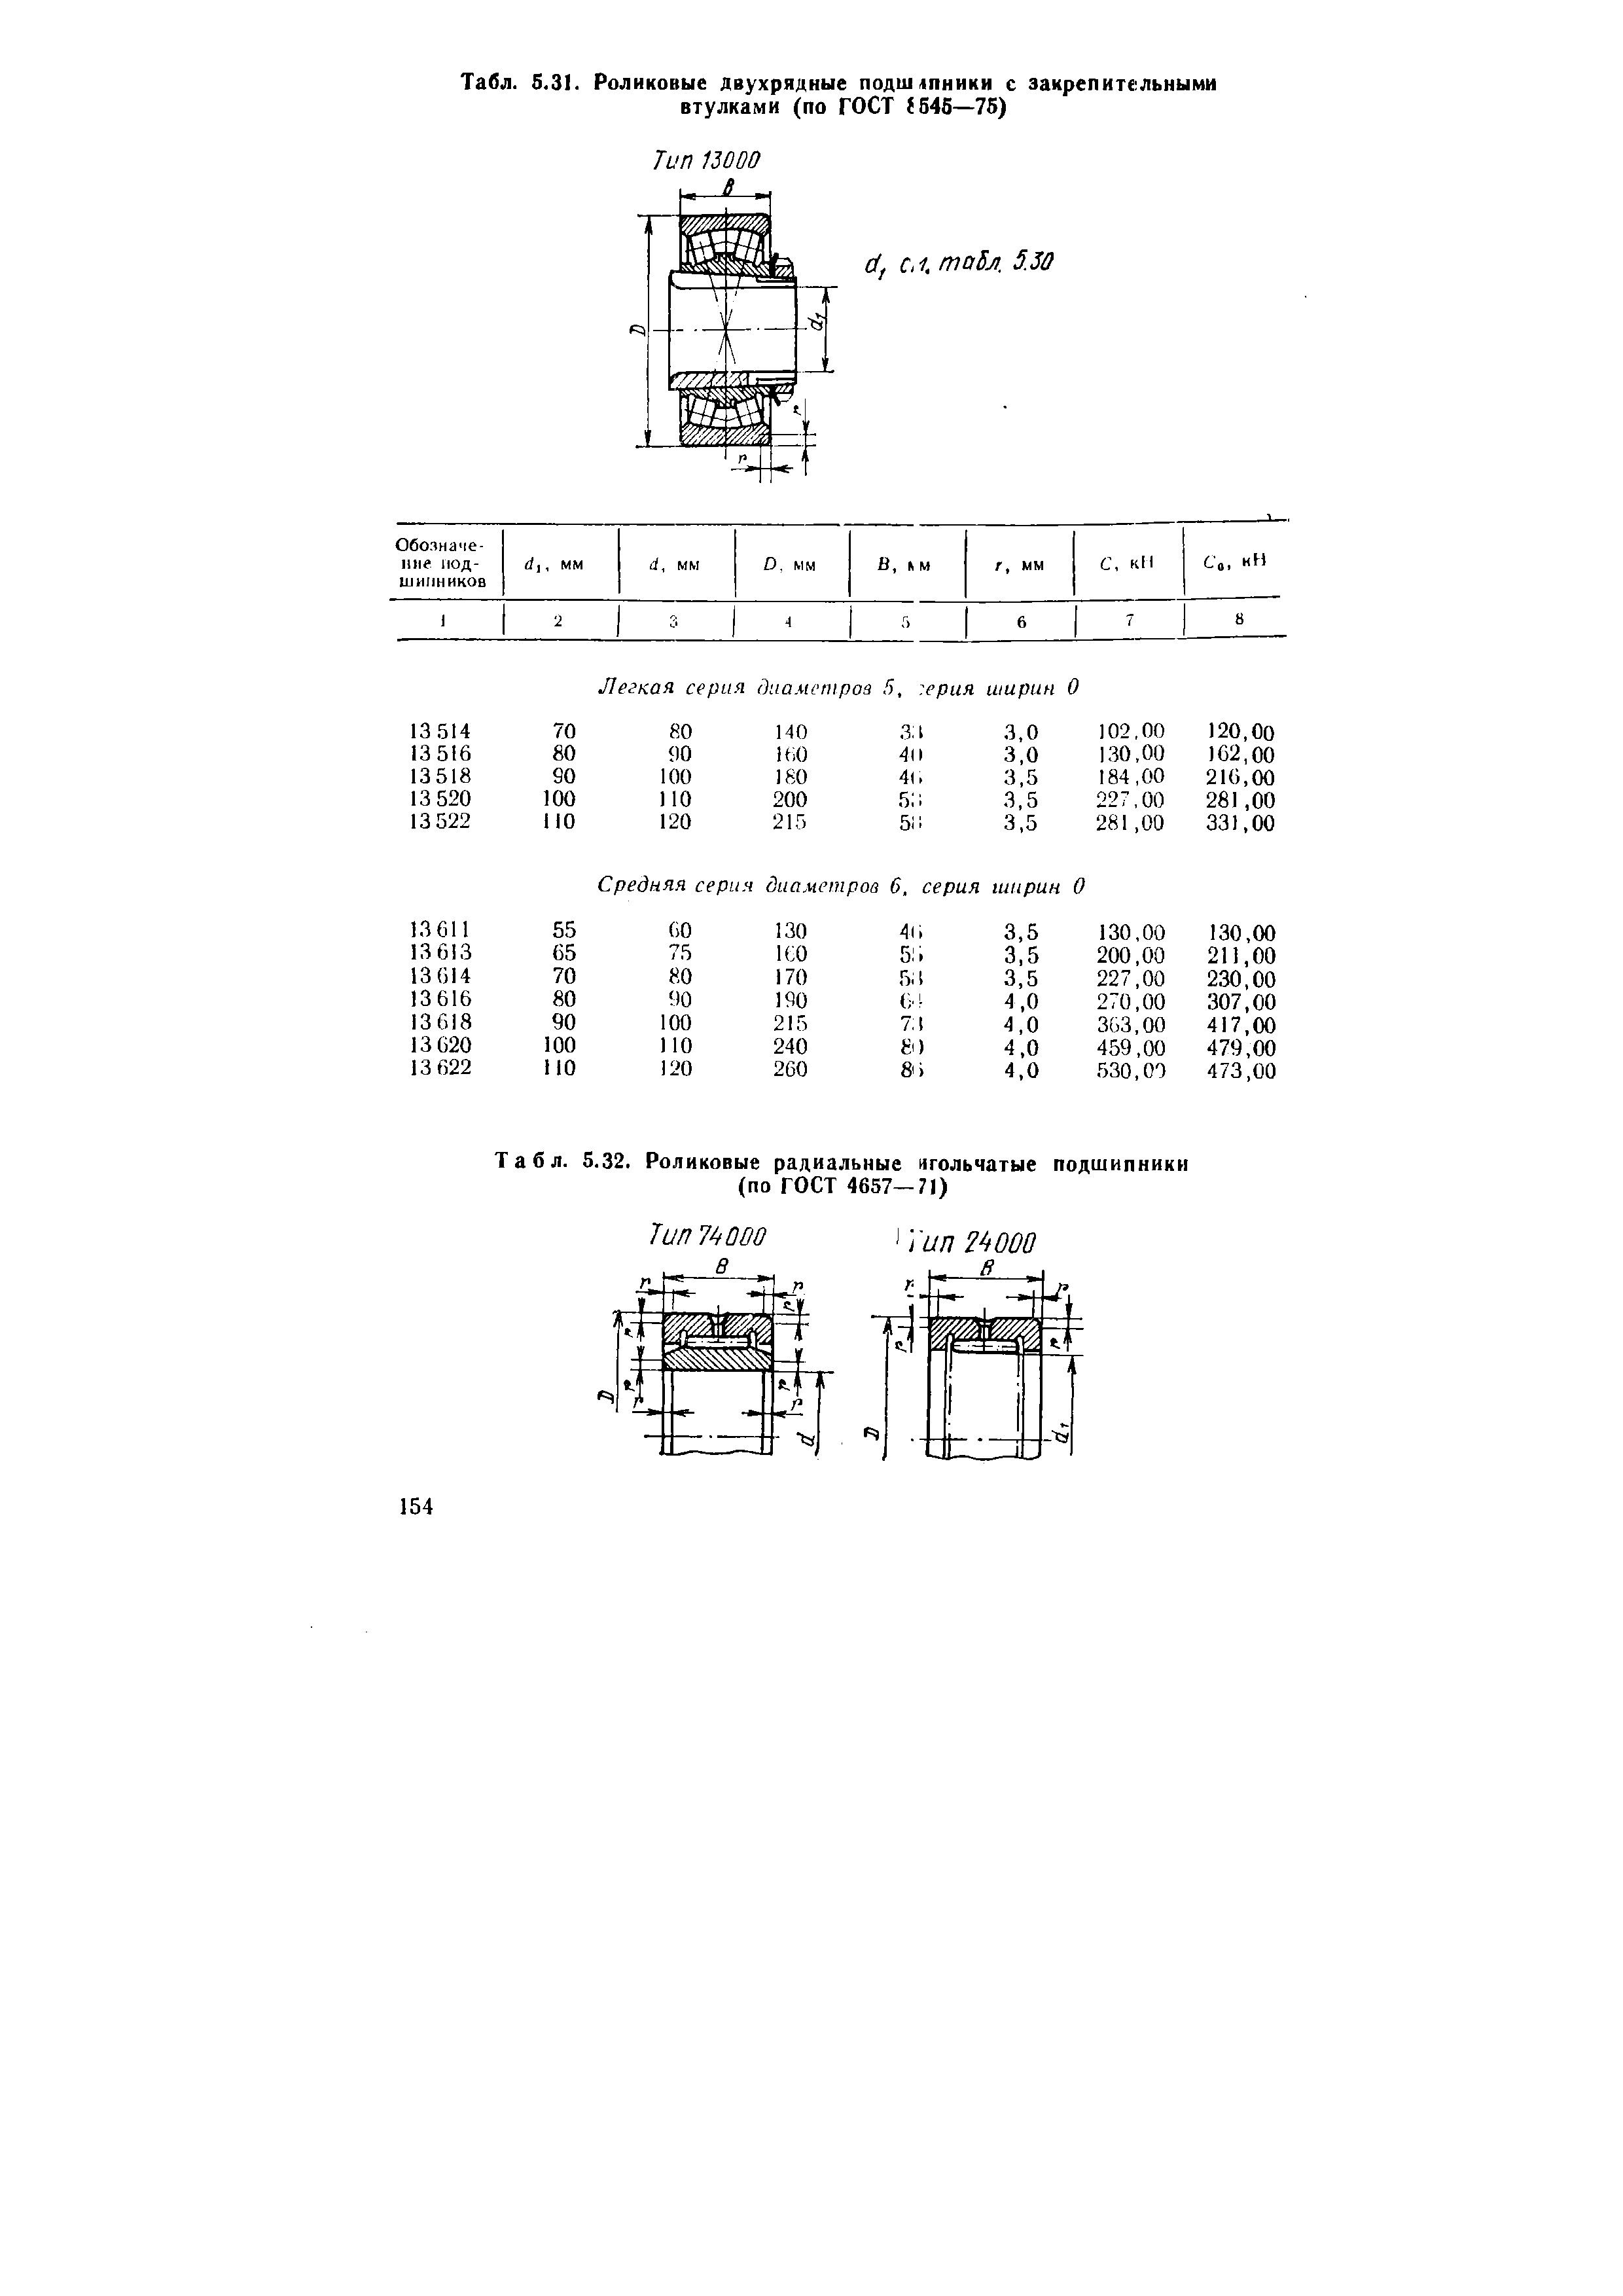 Табл. S.3I. Роликовые двухрядные подшапники с закрепительными втулками (по ГОСТ 546—75)